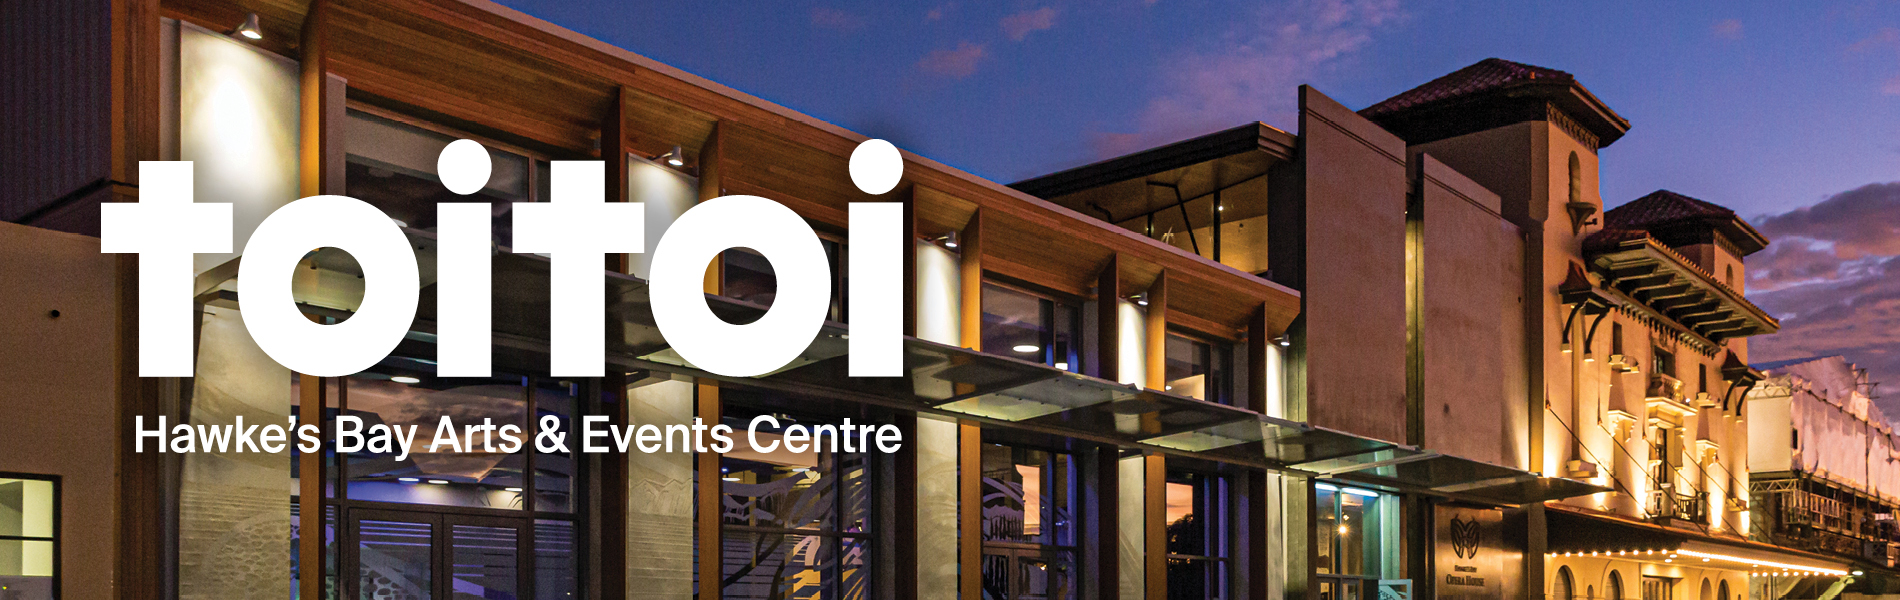 
Toitoi - Hawke's Bay Arts & Events Centre